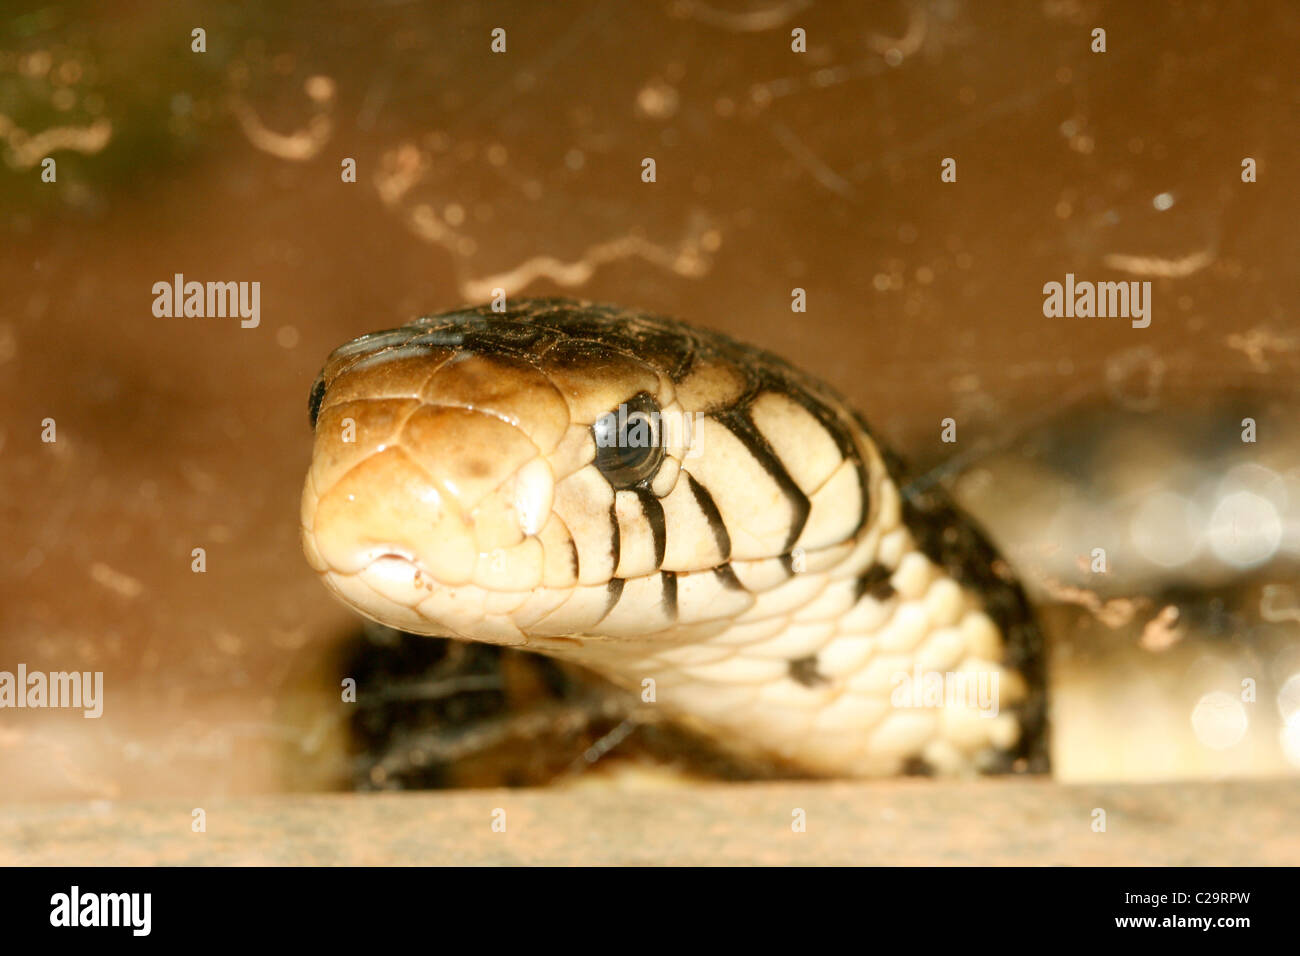 A forest cobra (Naja melanoleuca) in Uganda Stock Photo